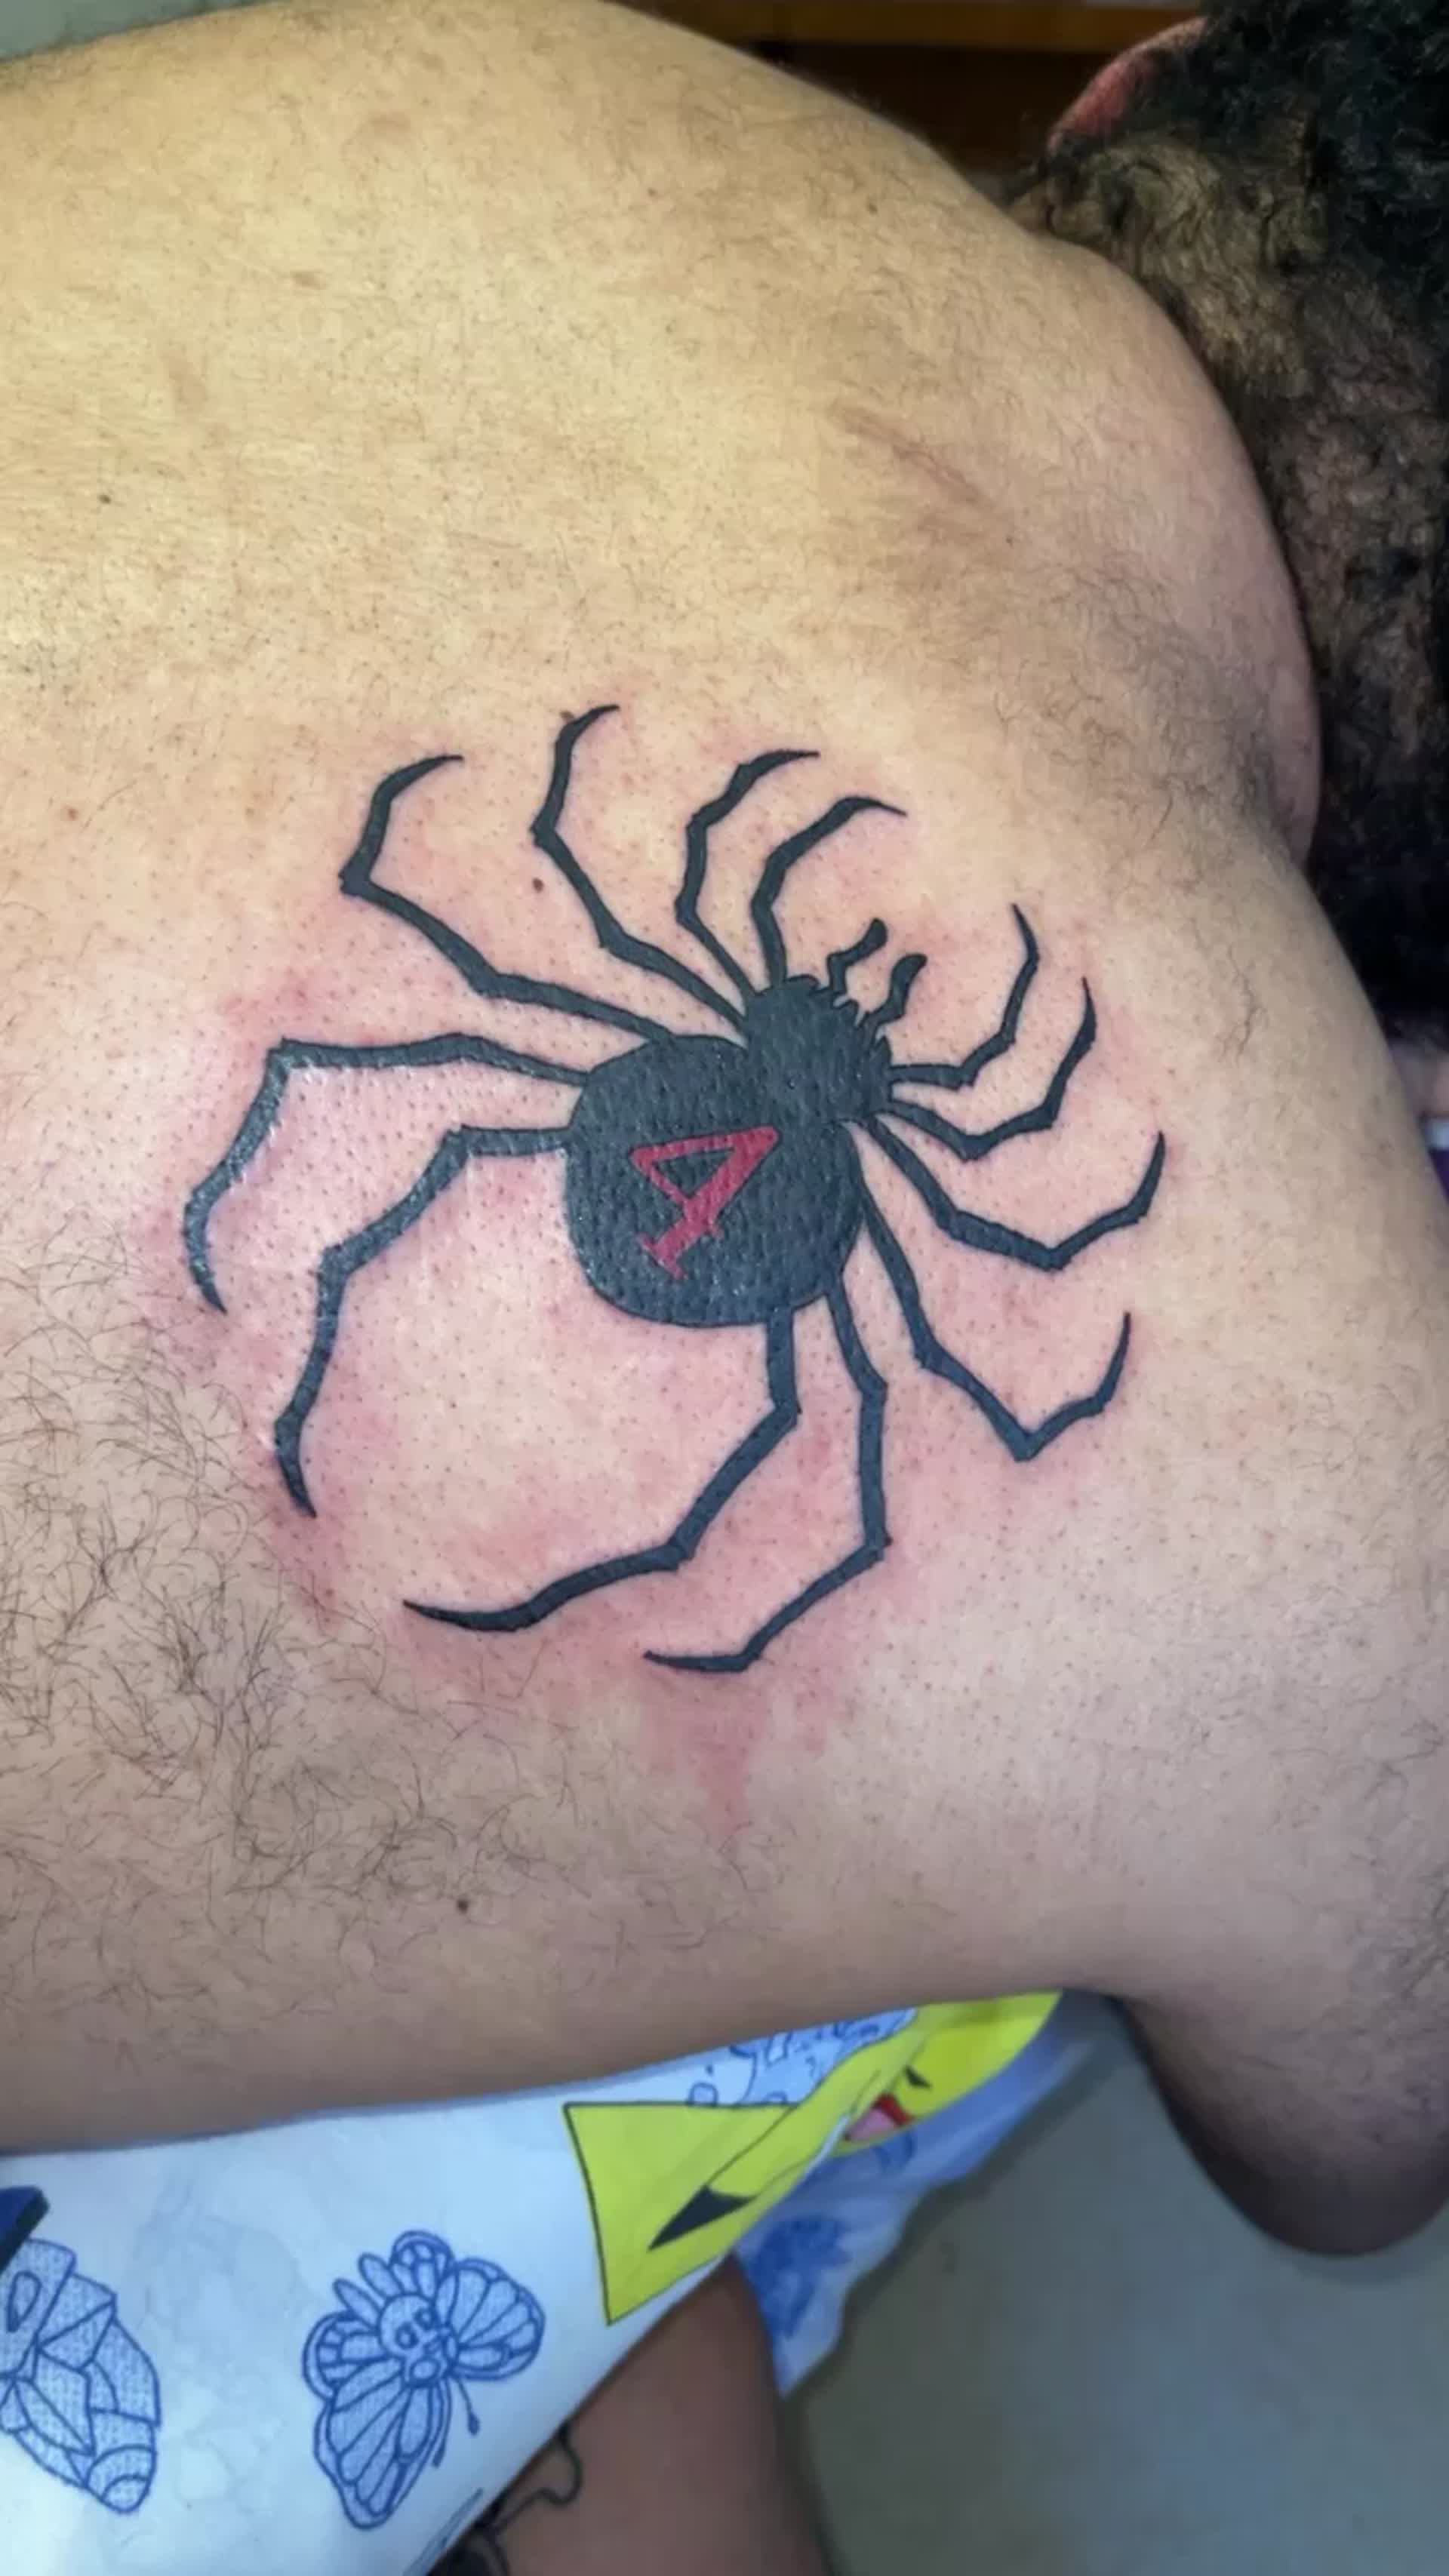 Artstation - Hisoka'S Spider Tattoo